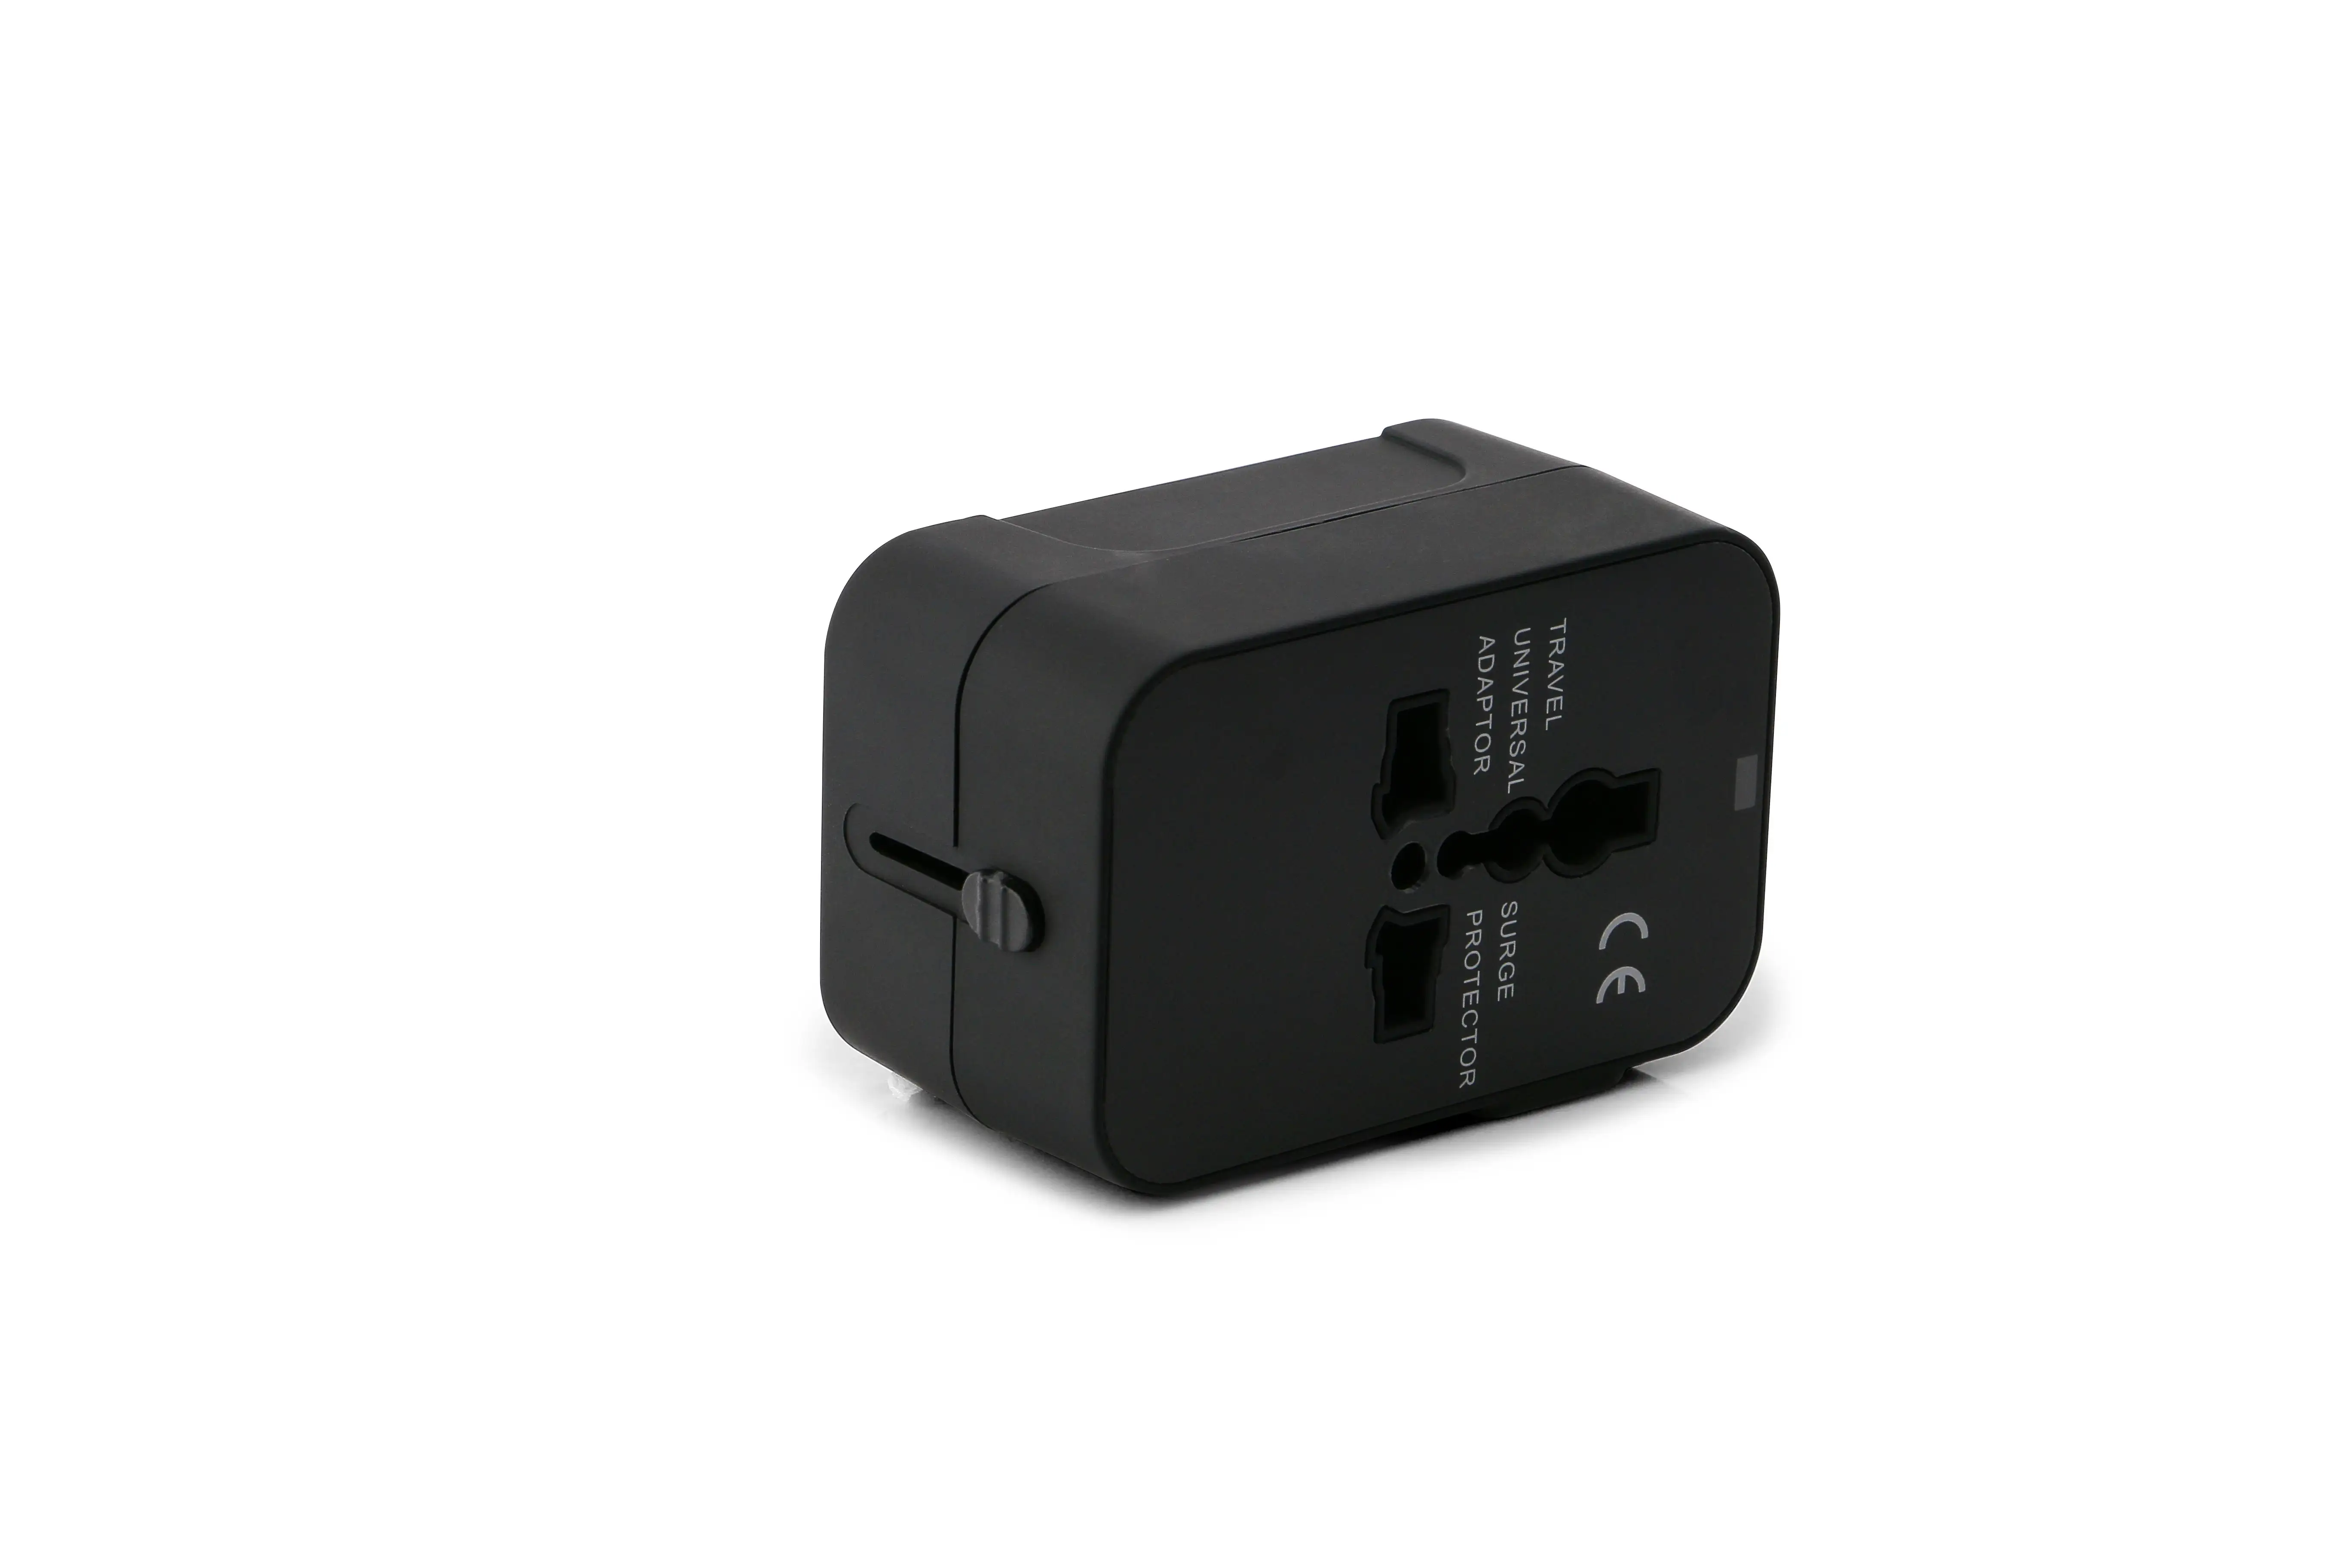 Siyah evrensel anahtarlama güç adaptörü çok fonksiyonlu All in One dünya çapında seyahat adaptörü c tipi USB şarj portları ile